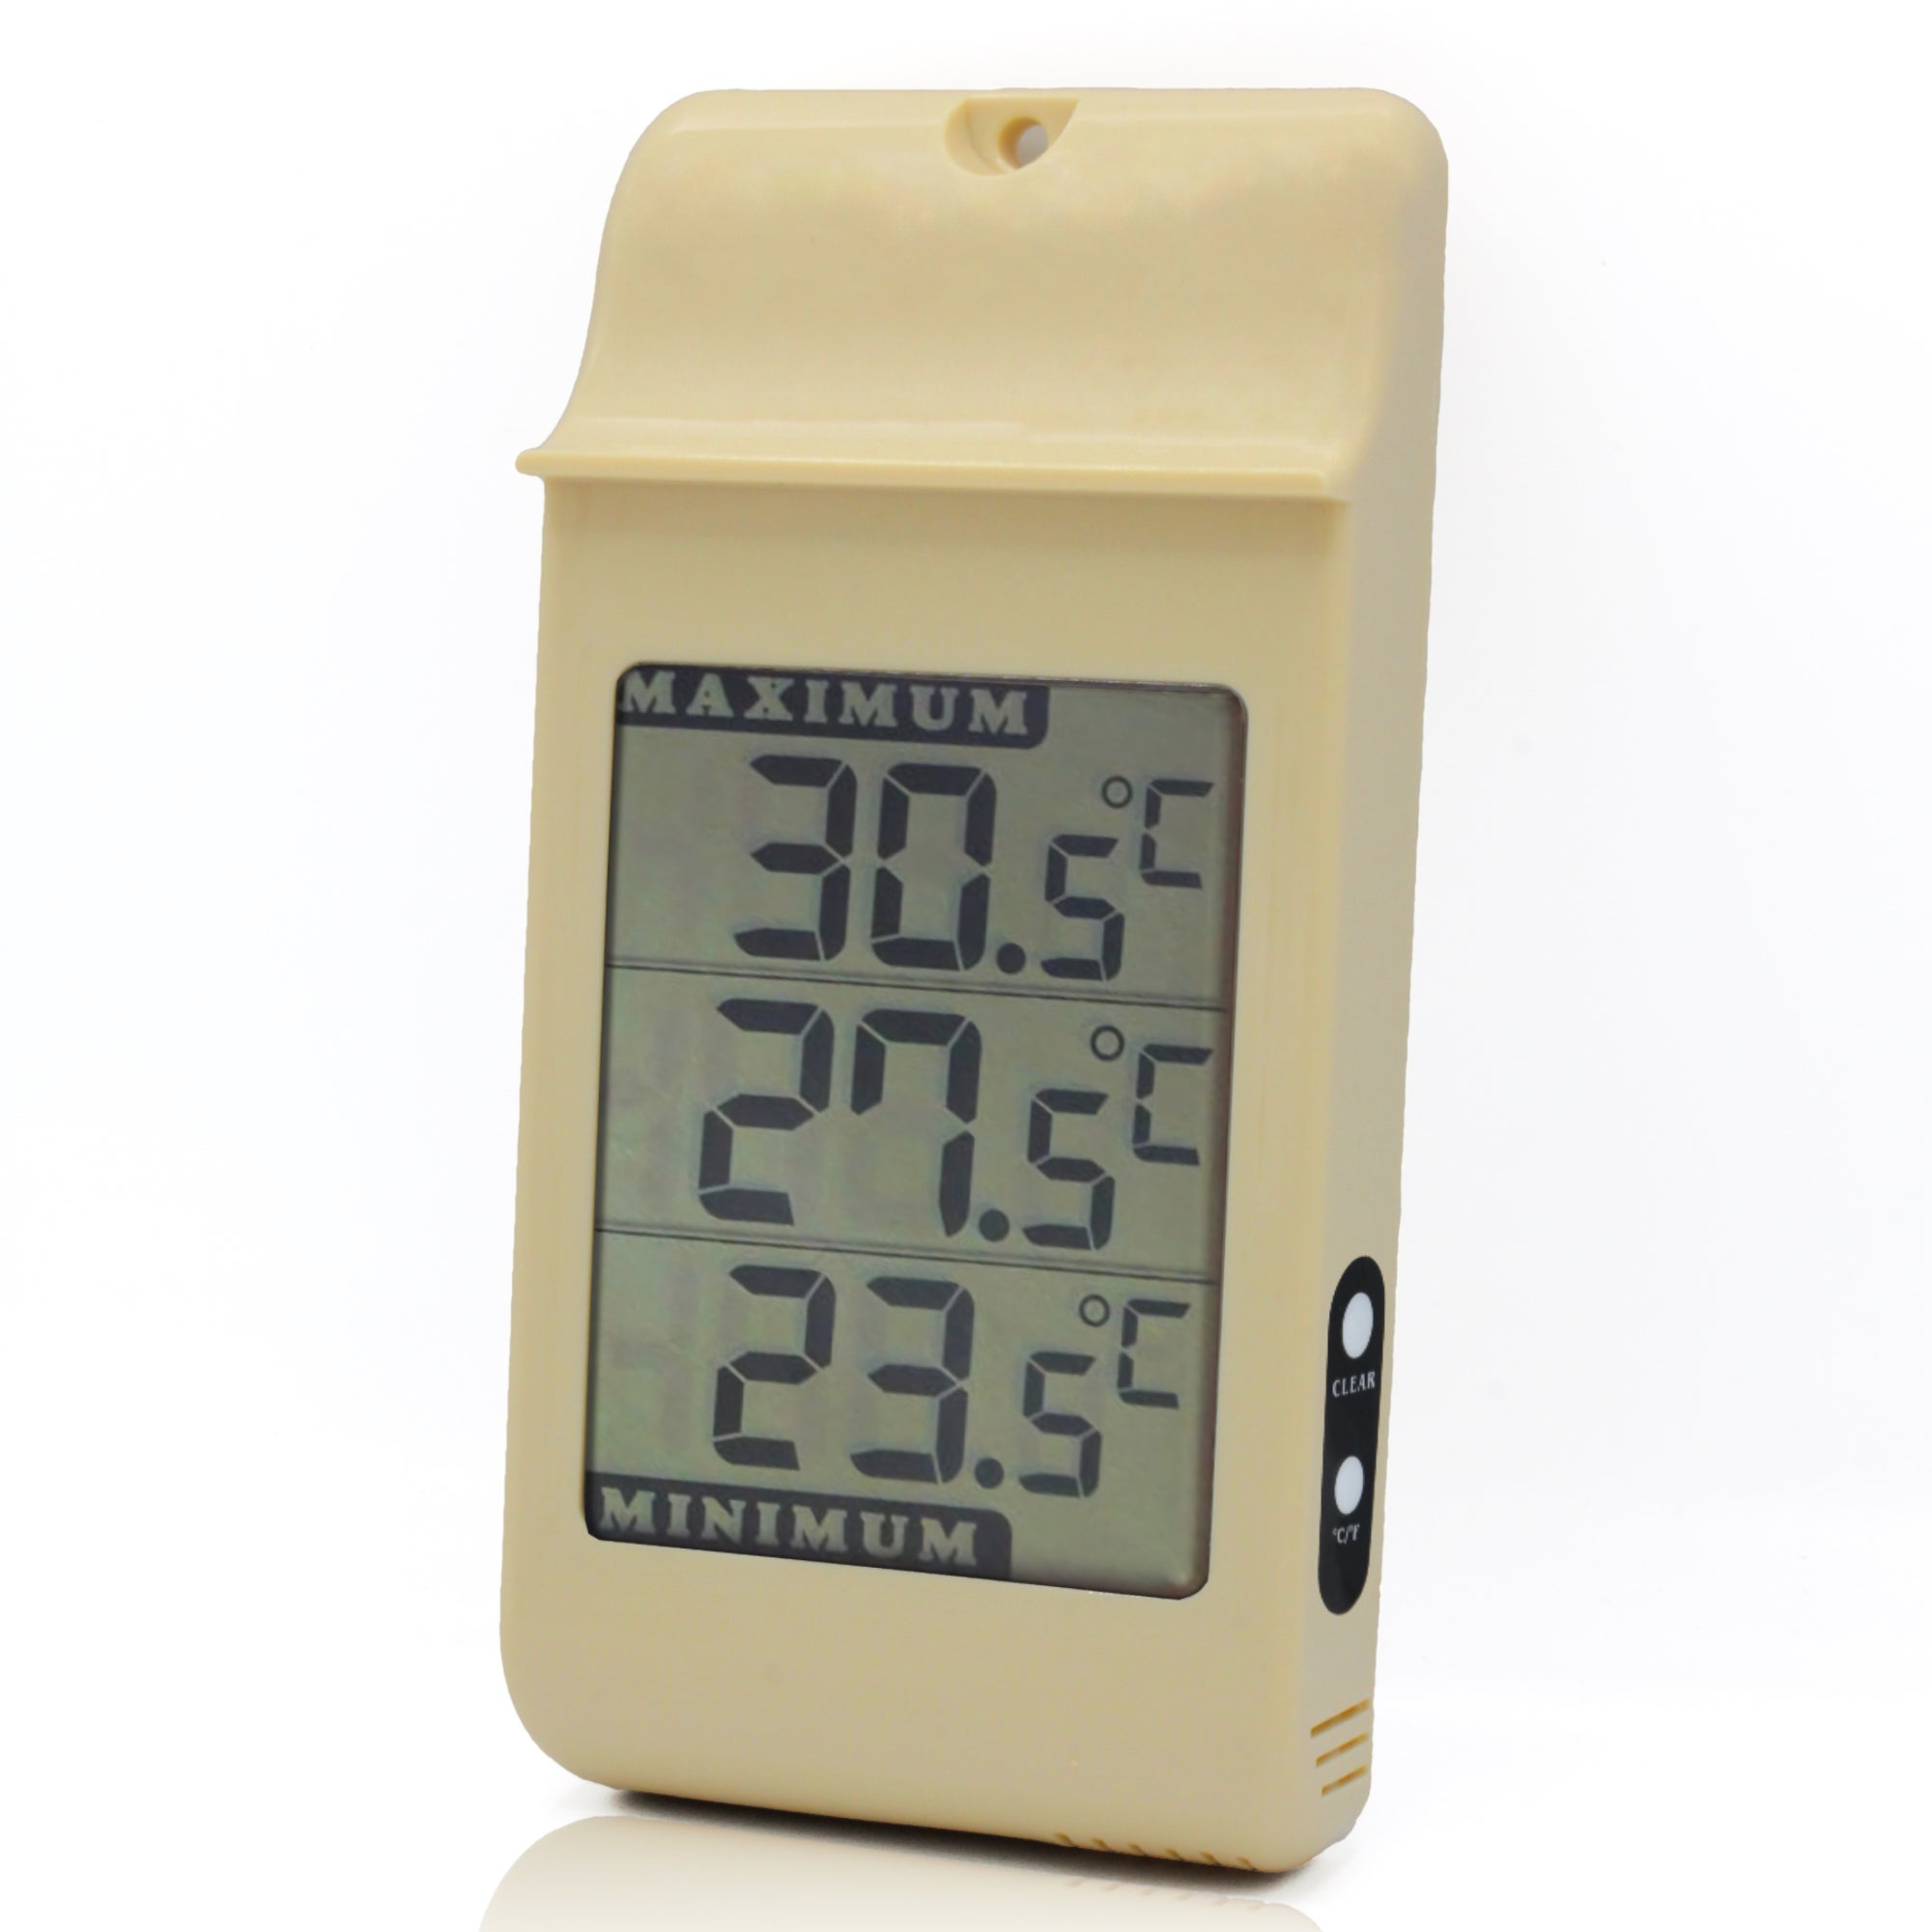 FISHTEC Thermometre Mini/Maxi Grands chiffres - Interieur et Exterieur -  Accroche Murale - Memoire des temperatures mini et maxi - 16 CM x 8 CM